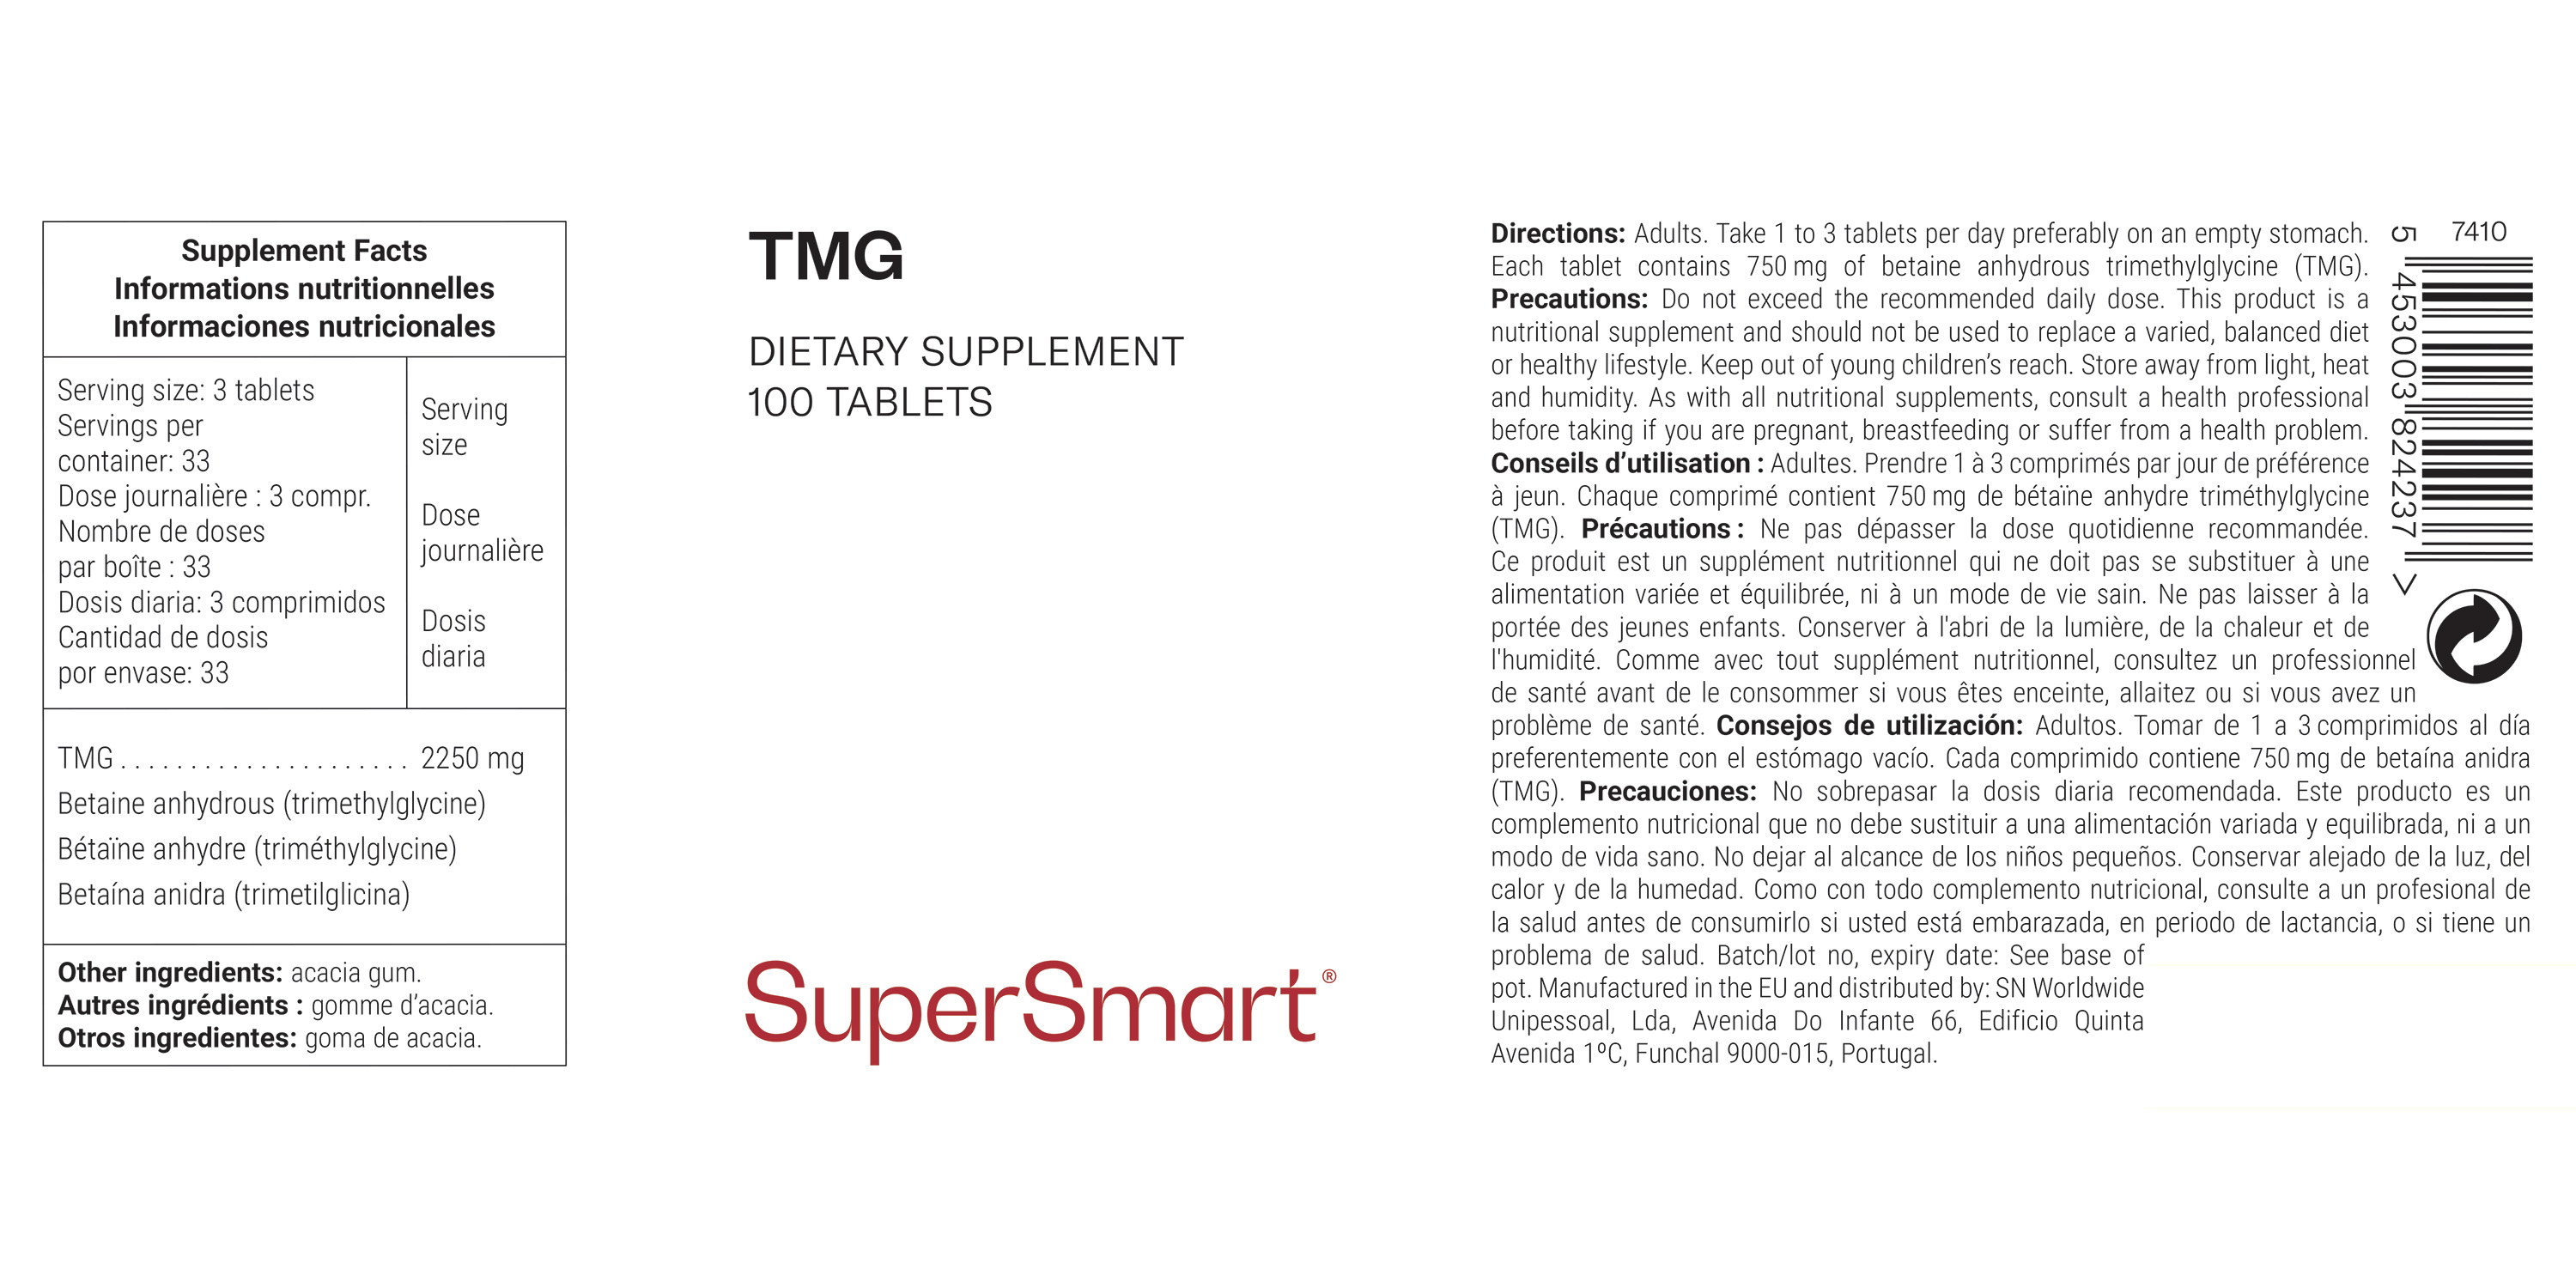 Complément Alimentaire de TMG (Triméthylglycine)